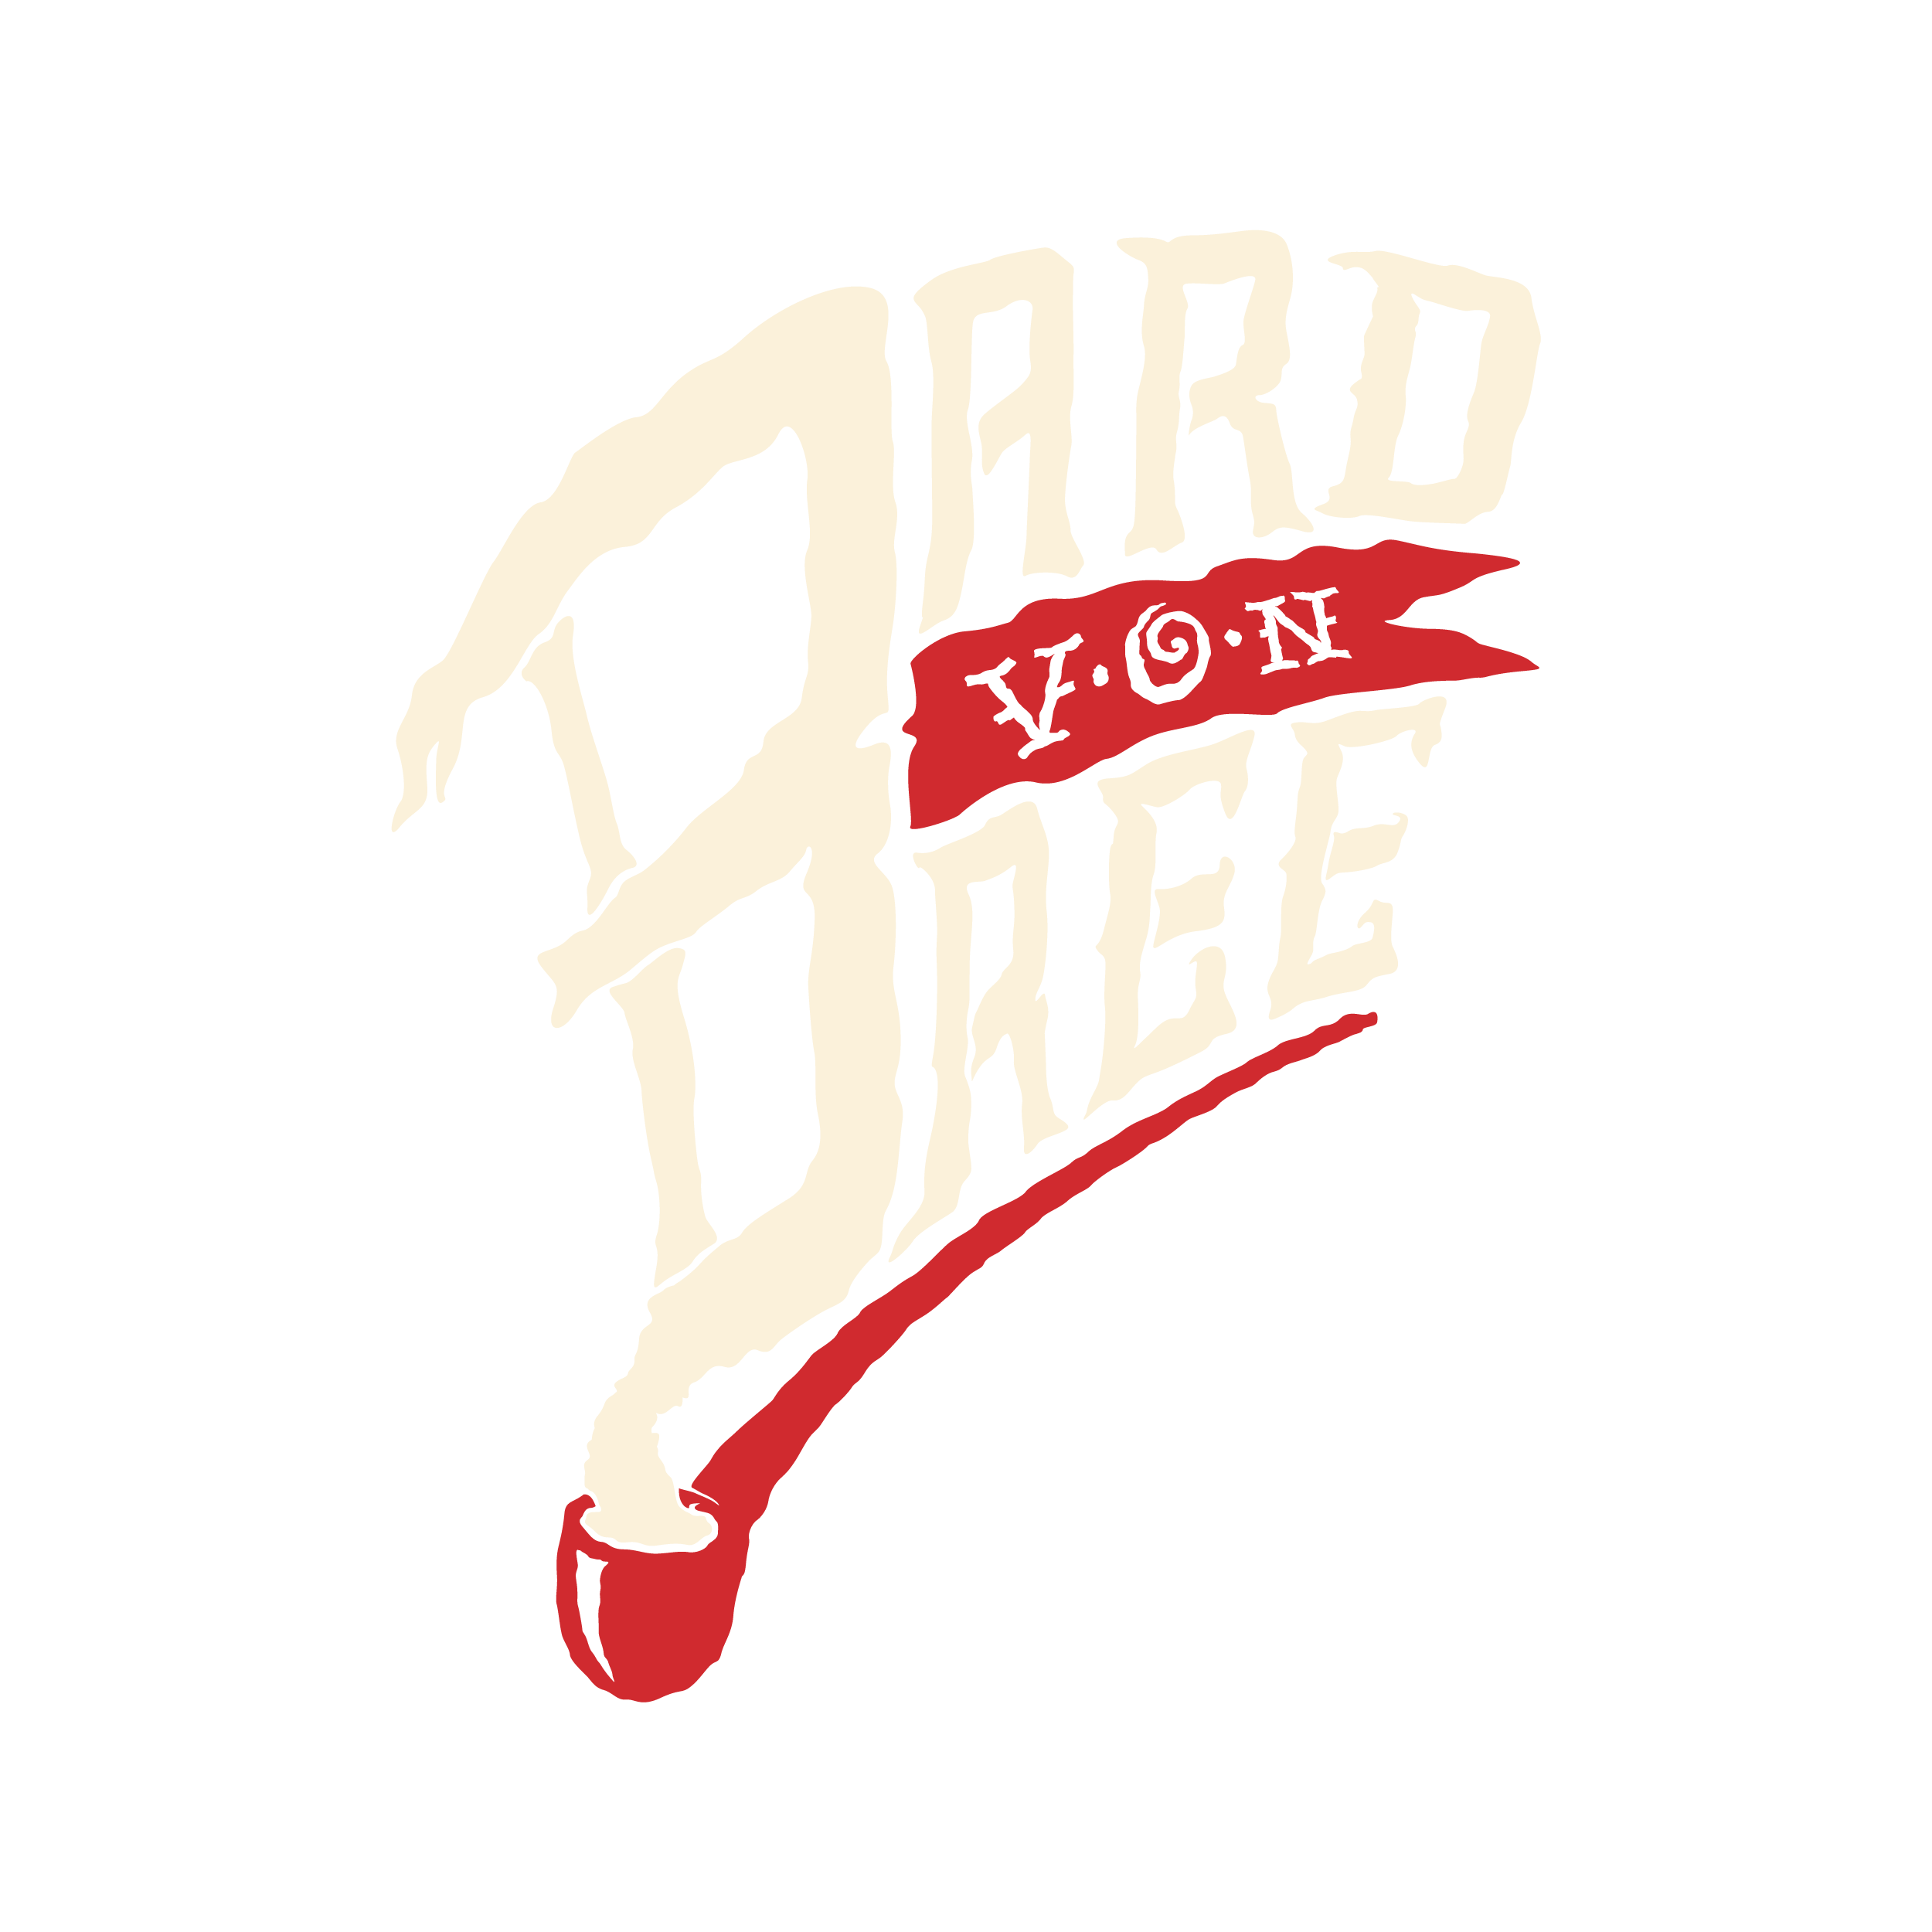 Bard von Bree